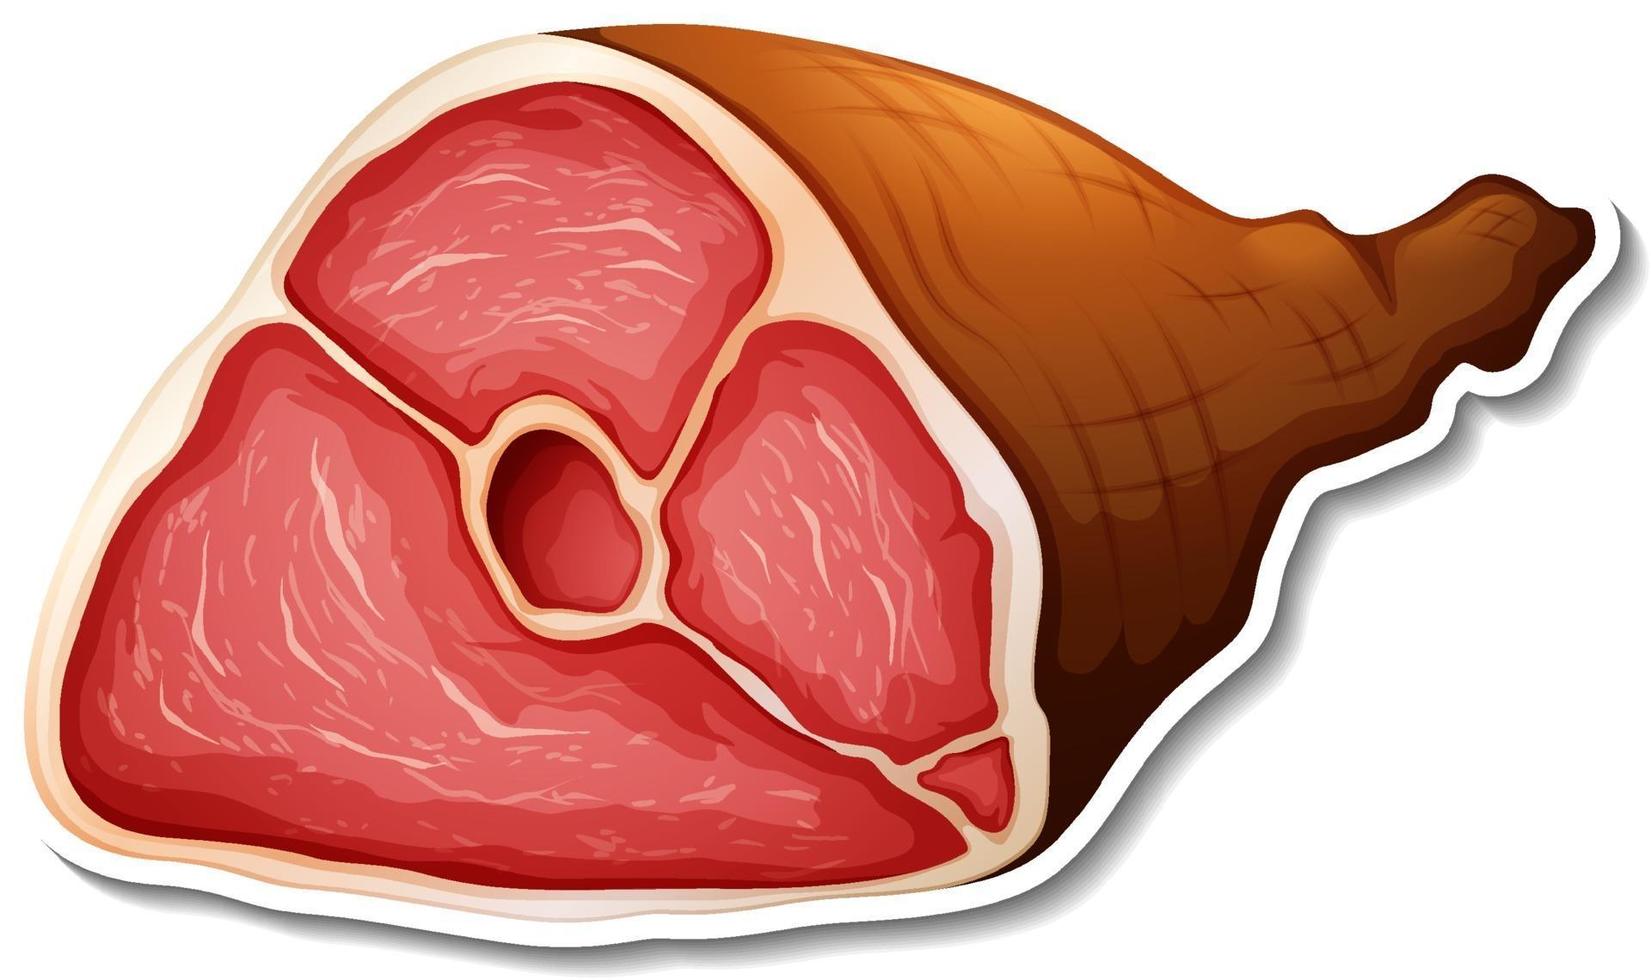 Raw pork leg sticker on white background vector